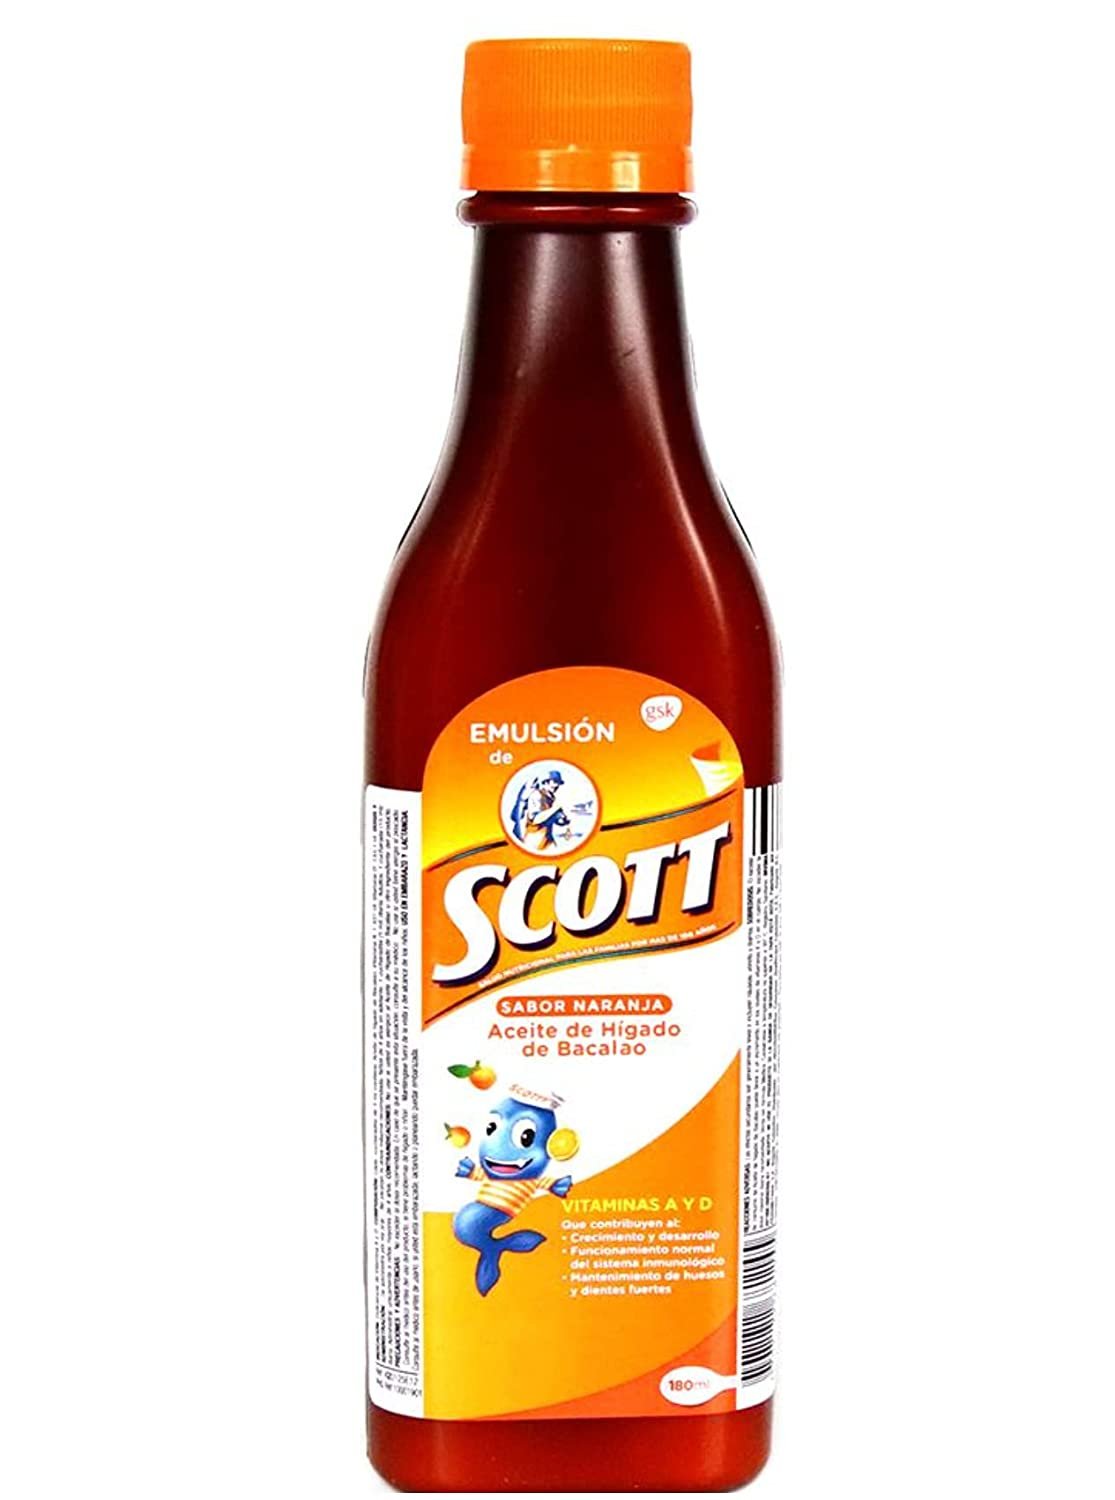 Emulsion de Scott 180 ml